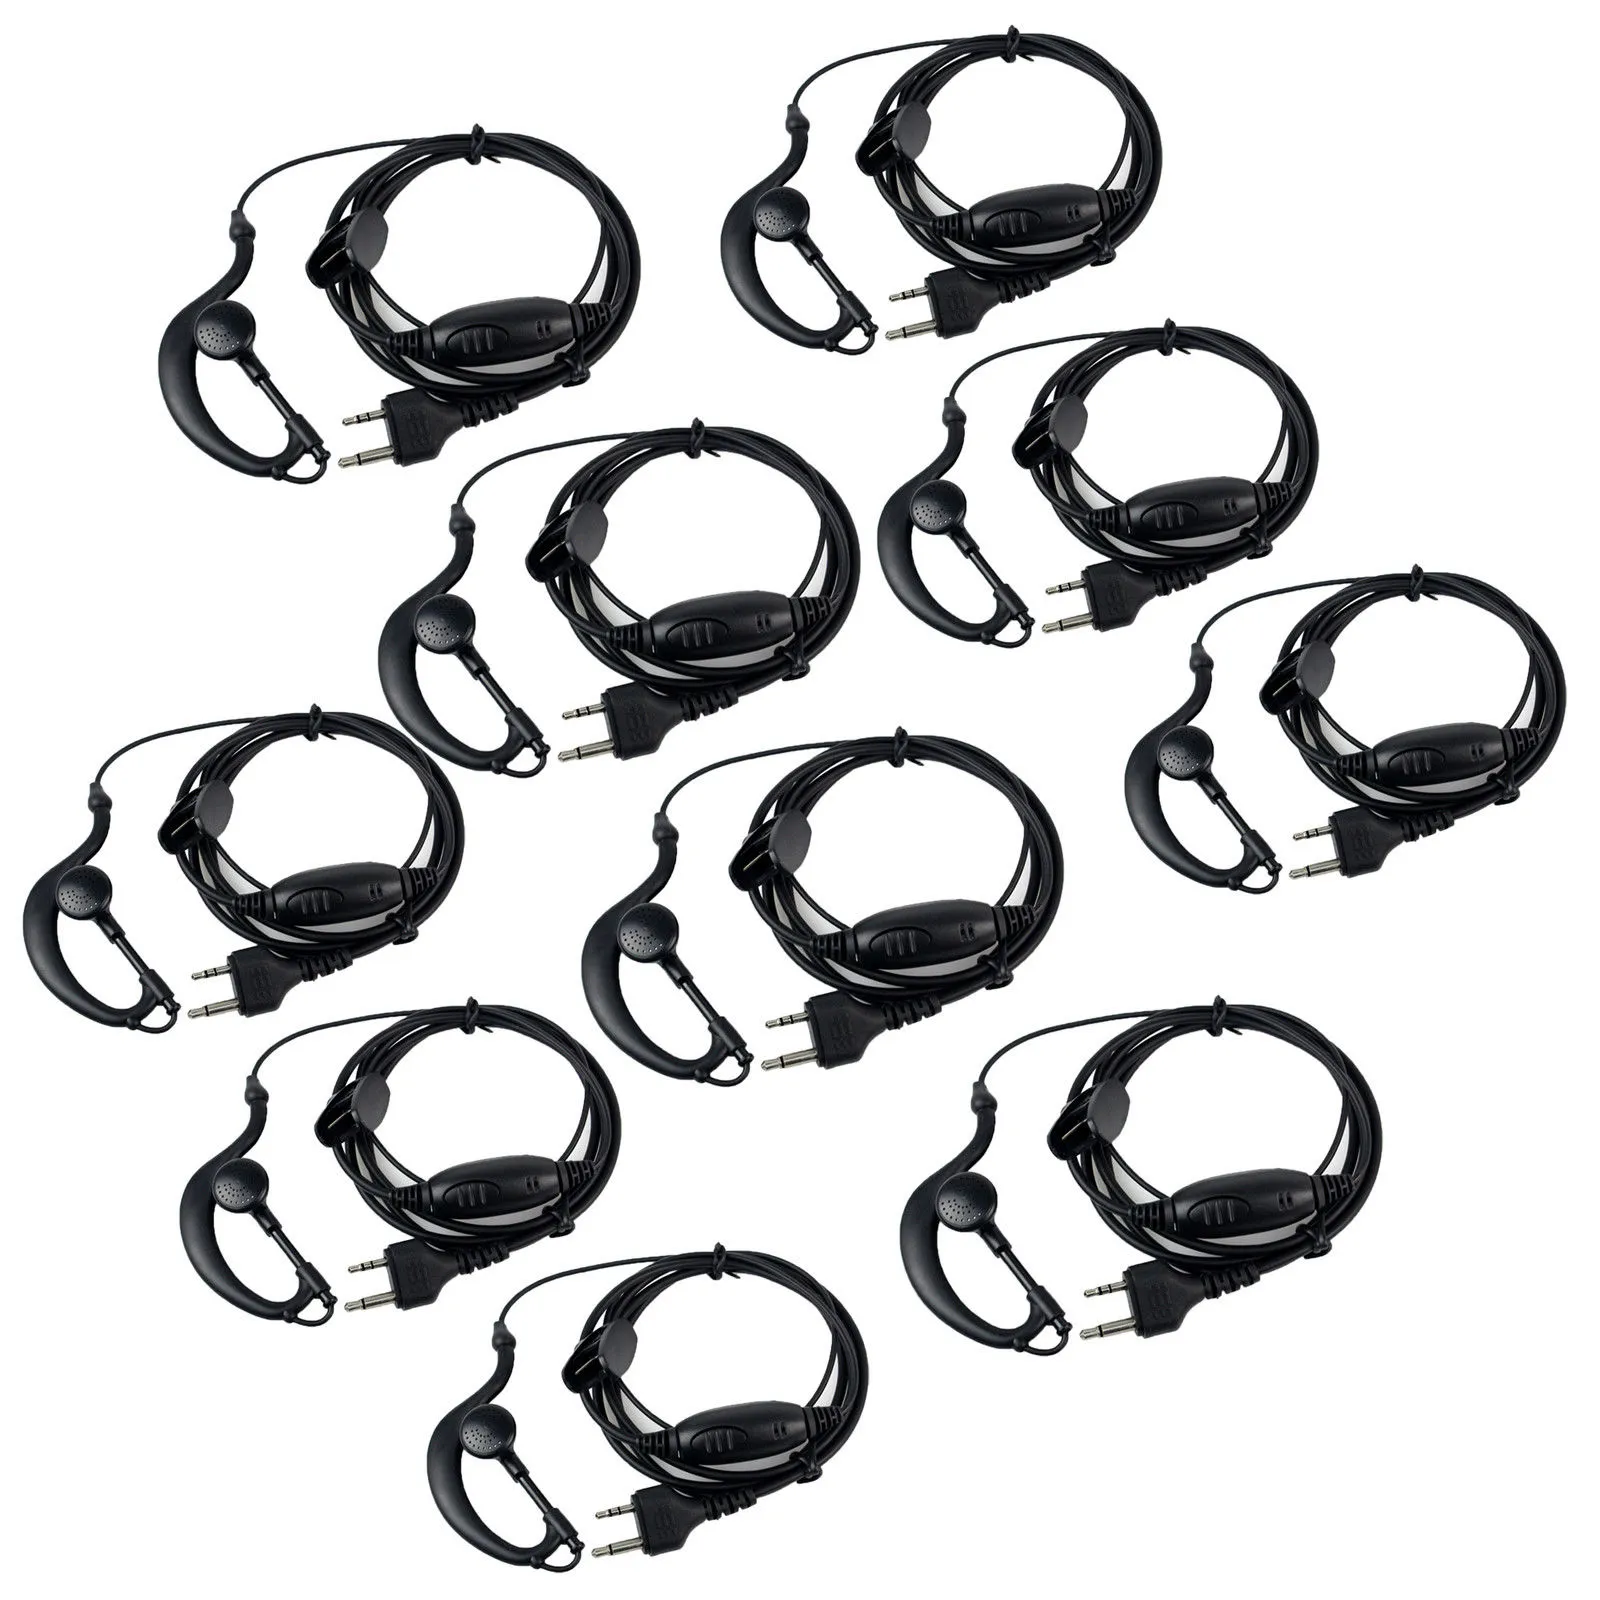 10 Stück G-Form Ohrhörer Headset PTT MIC für Midland Walkie Talkie G5/6/7/8 LXT114